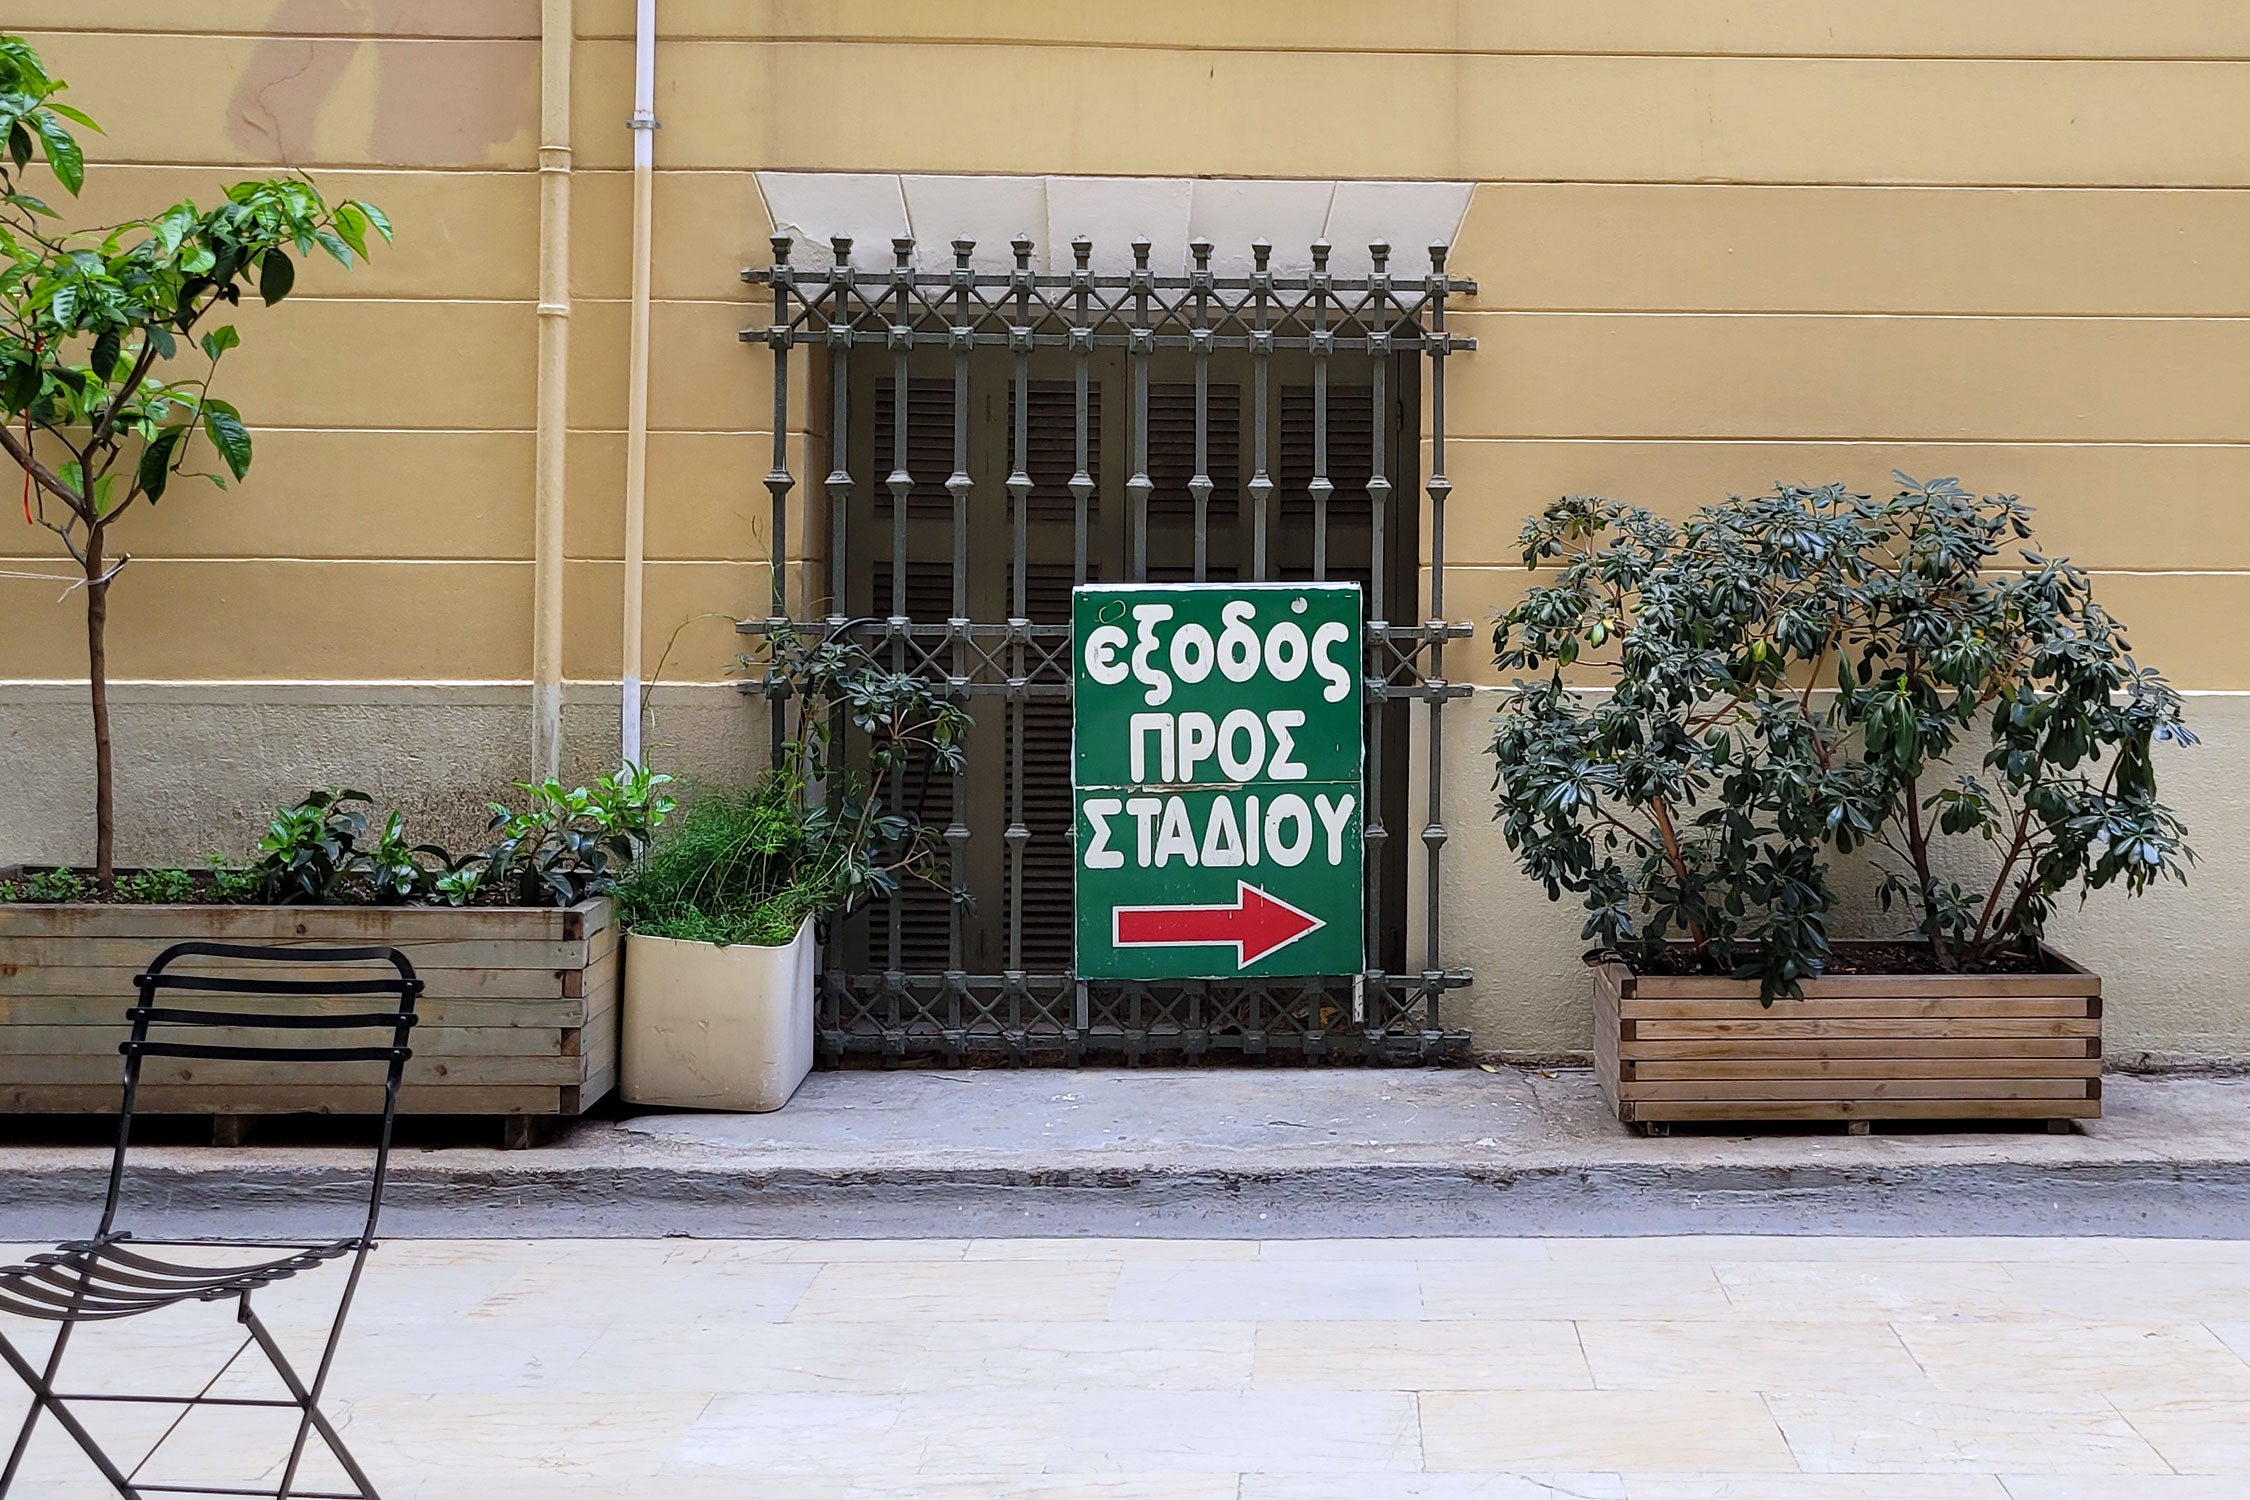 INTO STOAS: A Walk Through Overlooked Athens